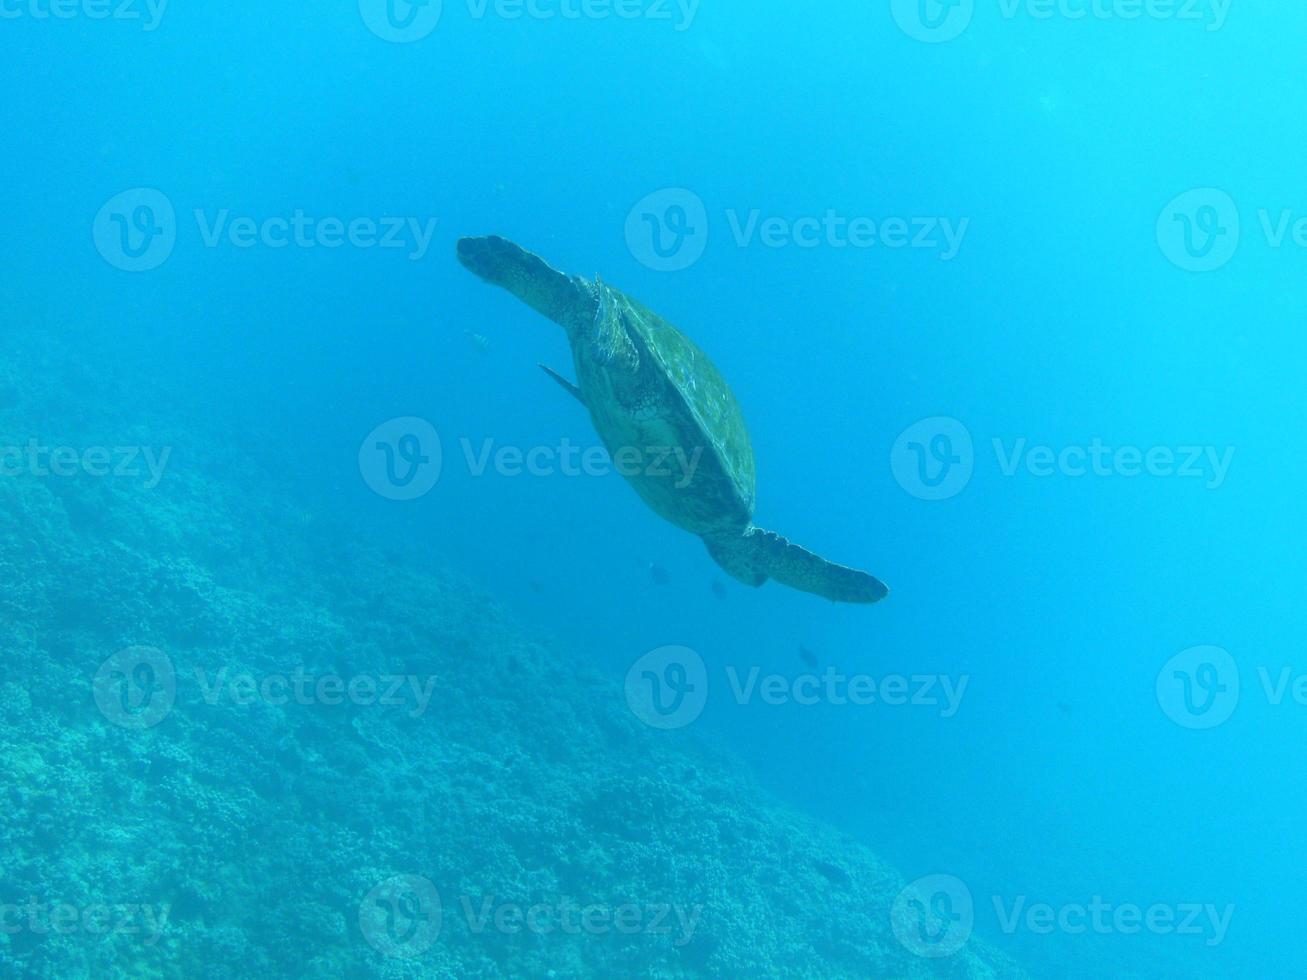 tartaruga marinha nadando até a superfície do oceano foto